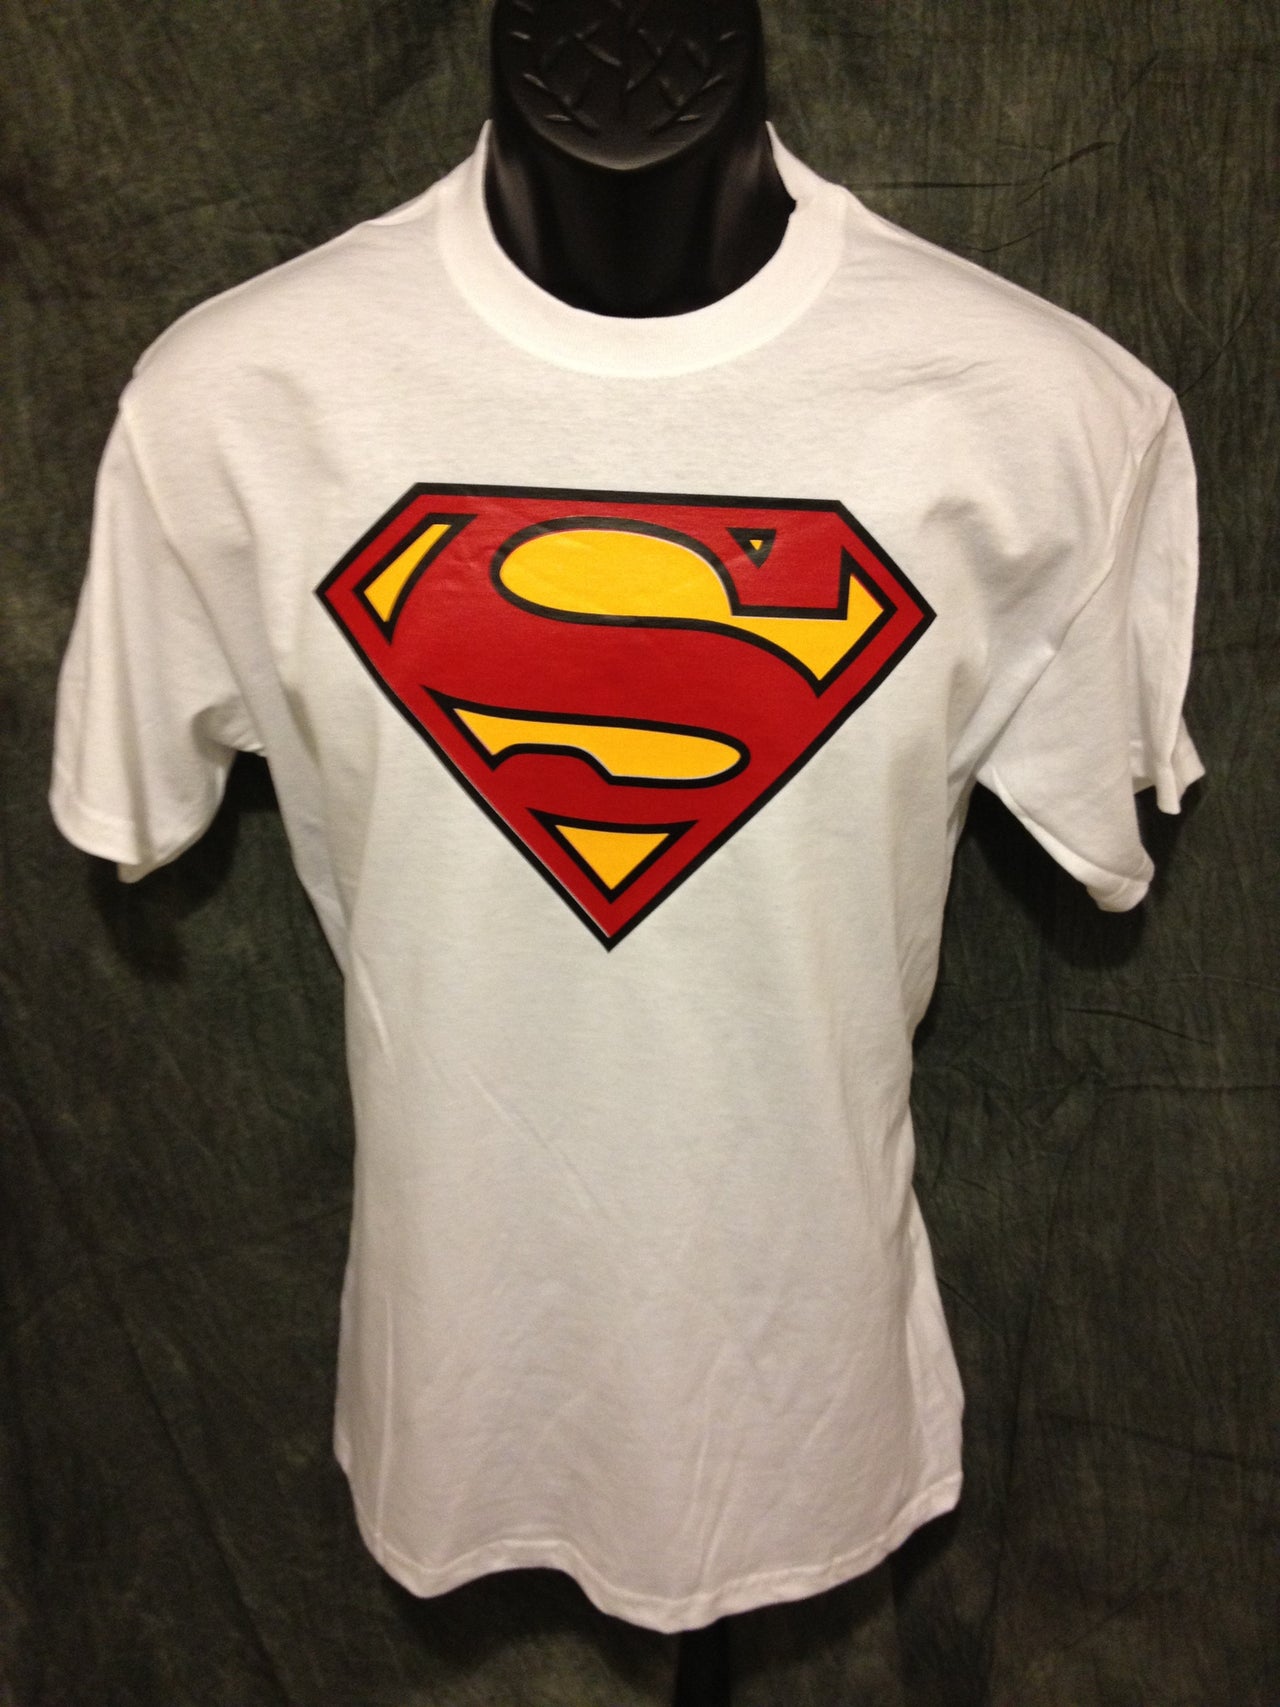 Superman Classic Logo on White Tshirt - TshirtNow.net - 2